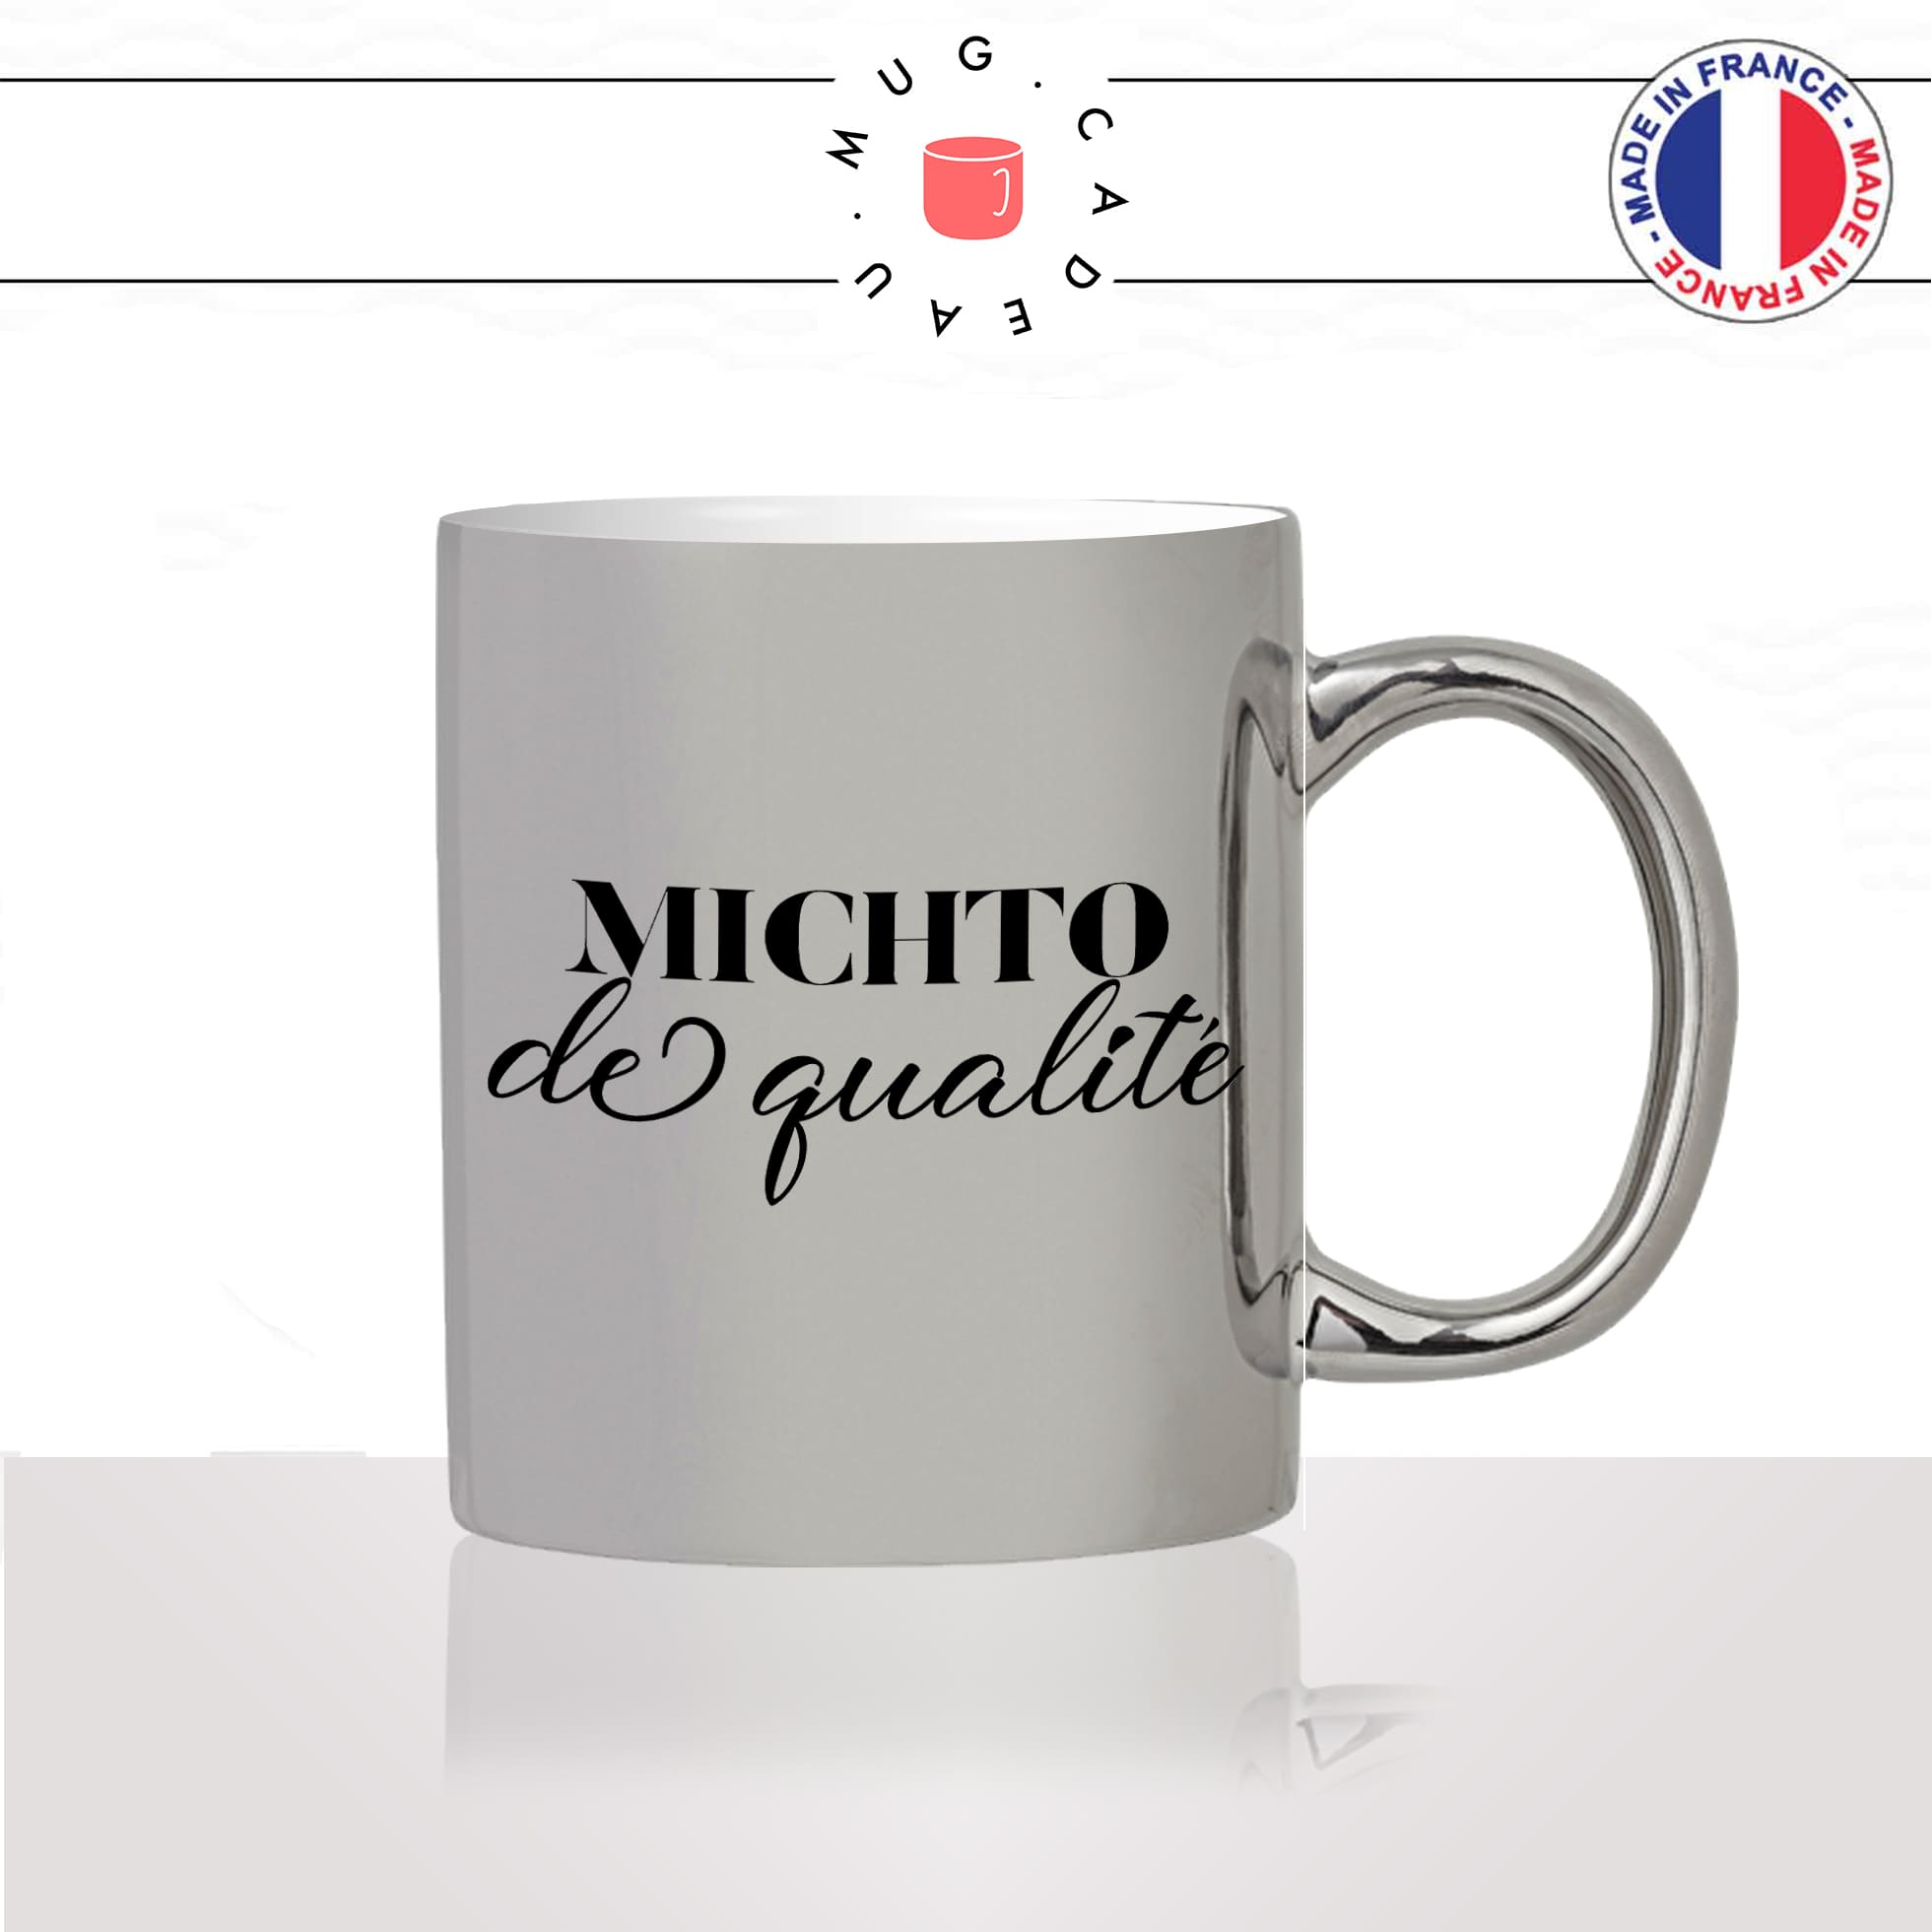 mug-tasse-argent-argenté-silver-michto-de-qualité-femme-argent-perfide-feminist-copine-collegue-idée-cadeau-fun-cool-café-thé-original2